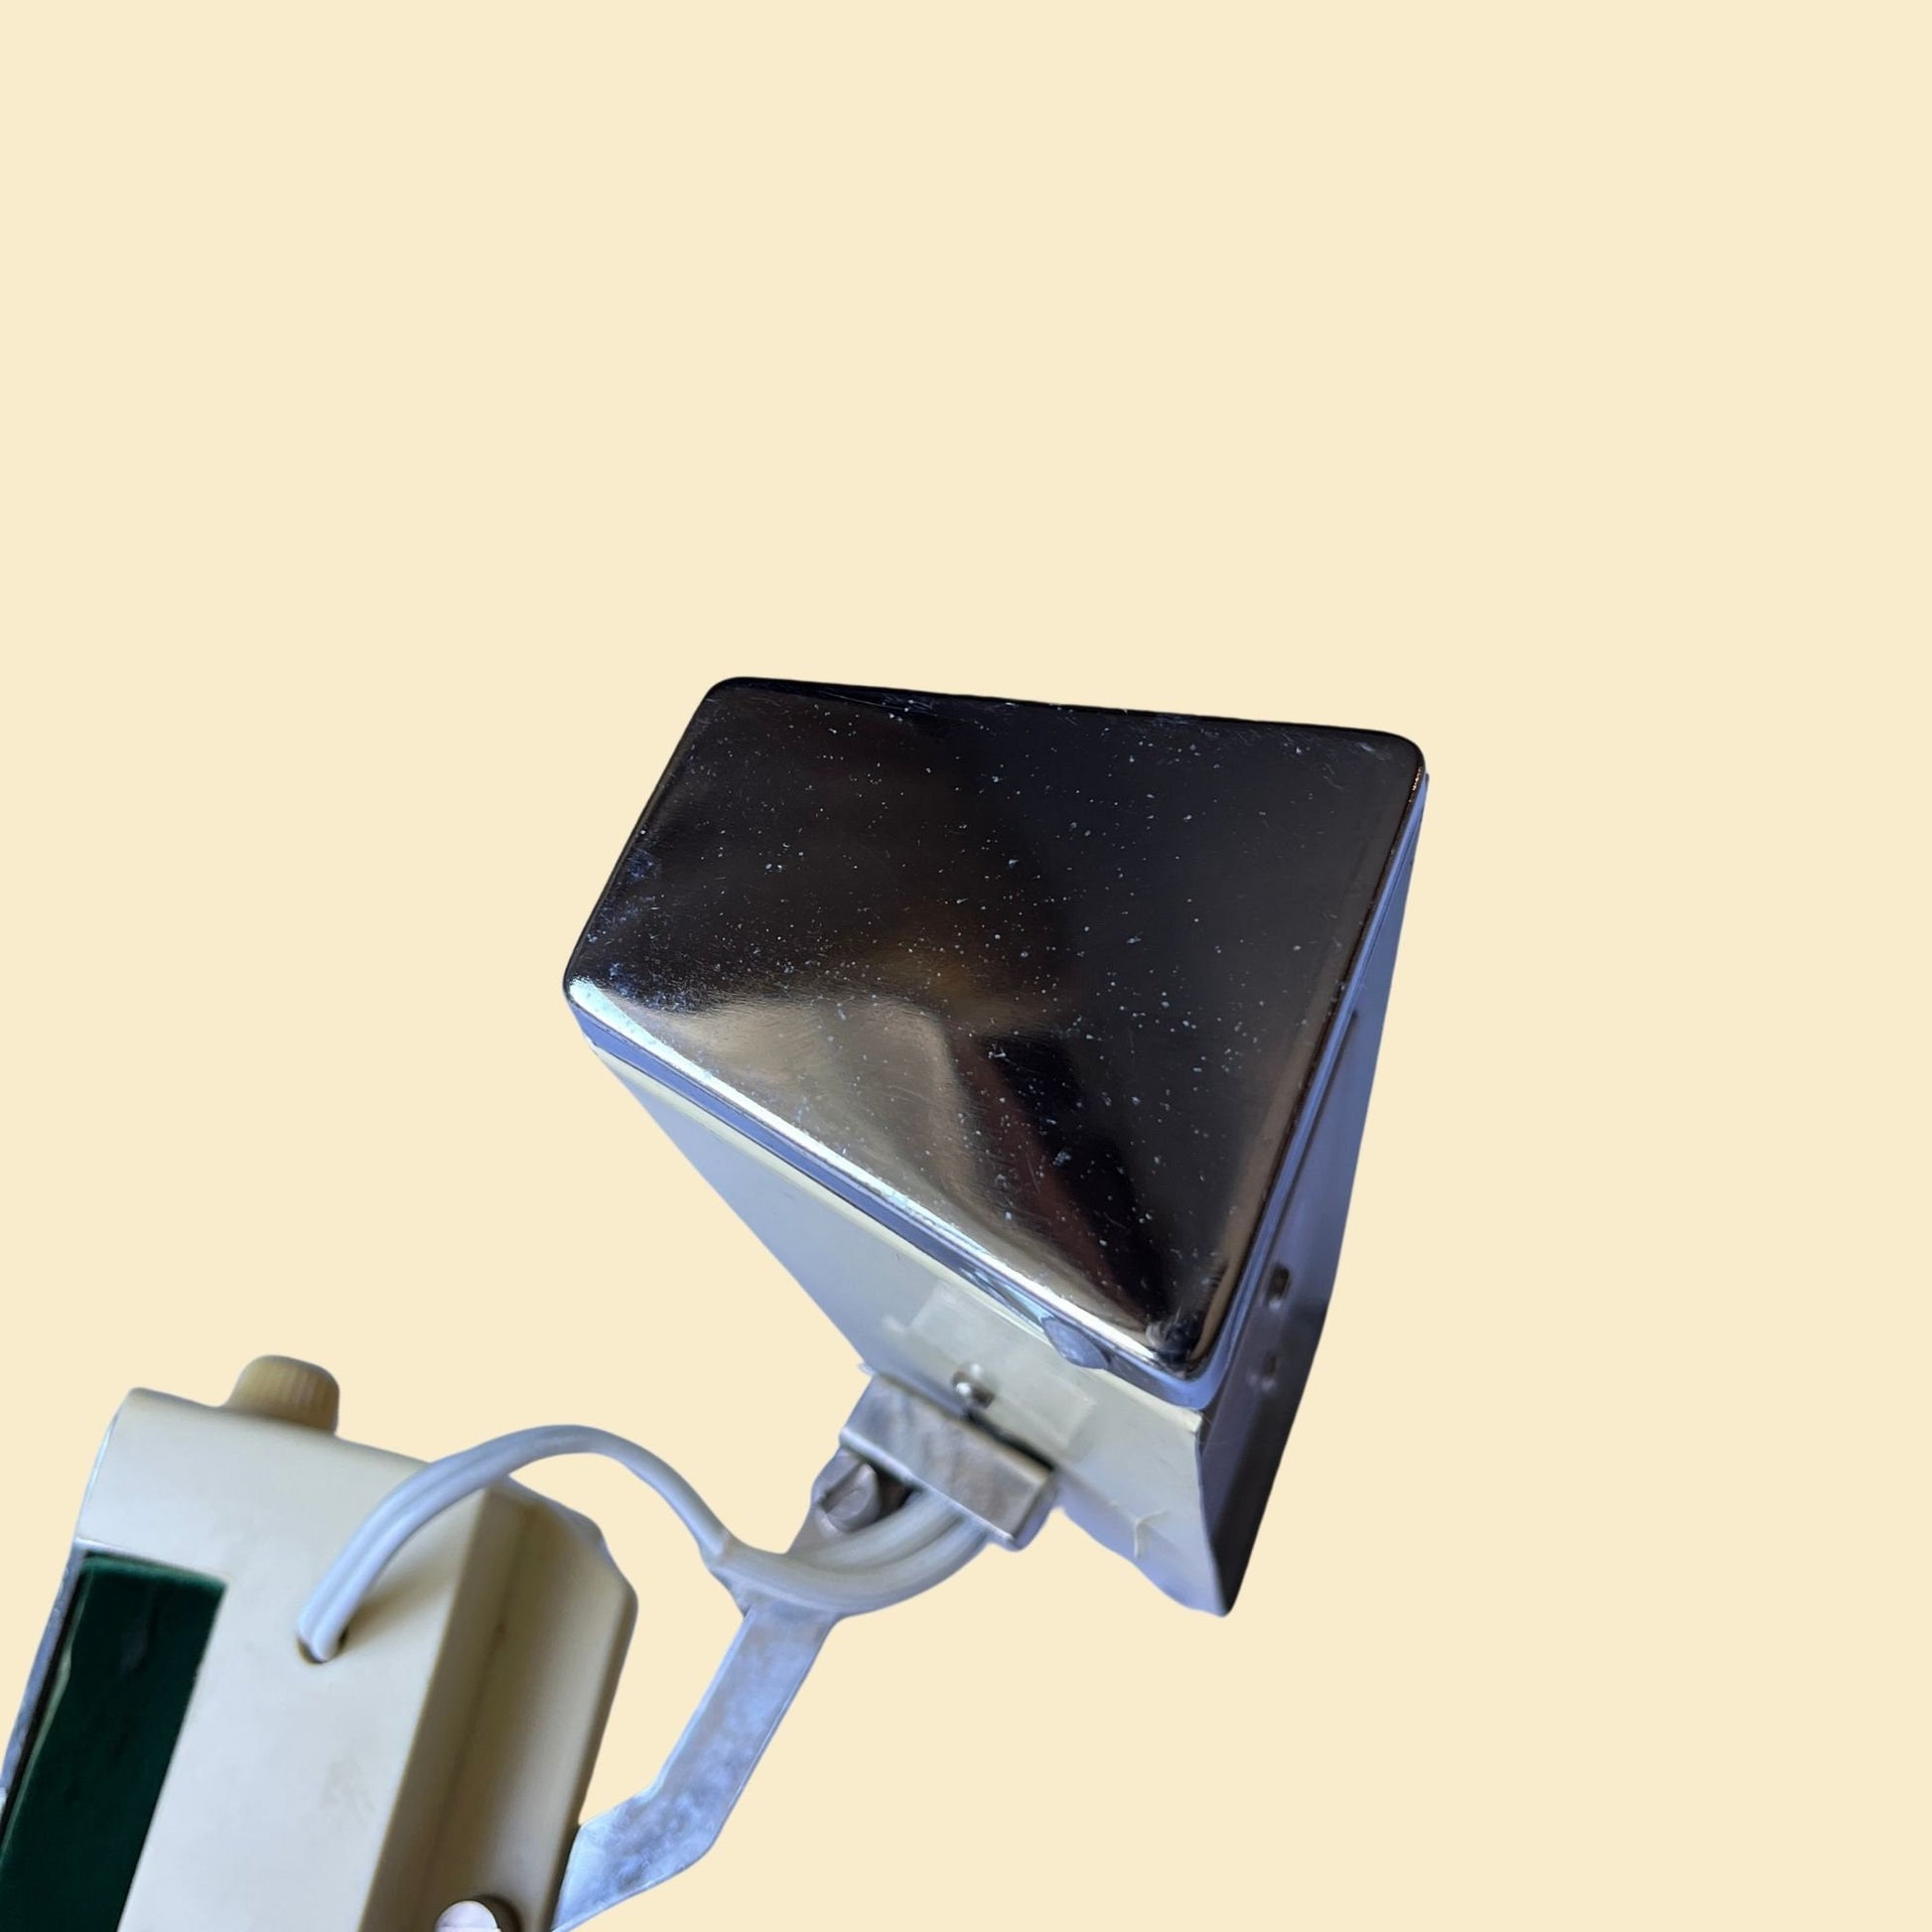 70s Mobilite adjustable clamp lamp, vintage beige desktop clip lamp, 1970s articulated desk light